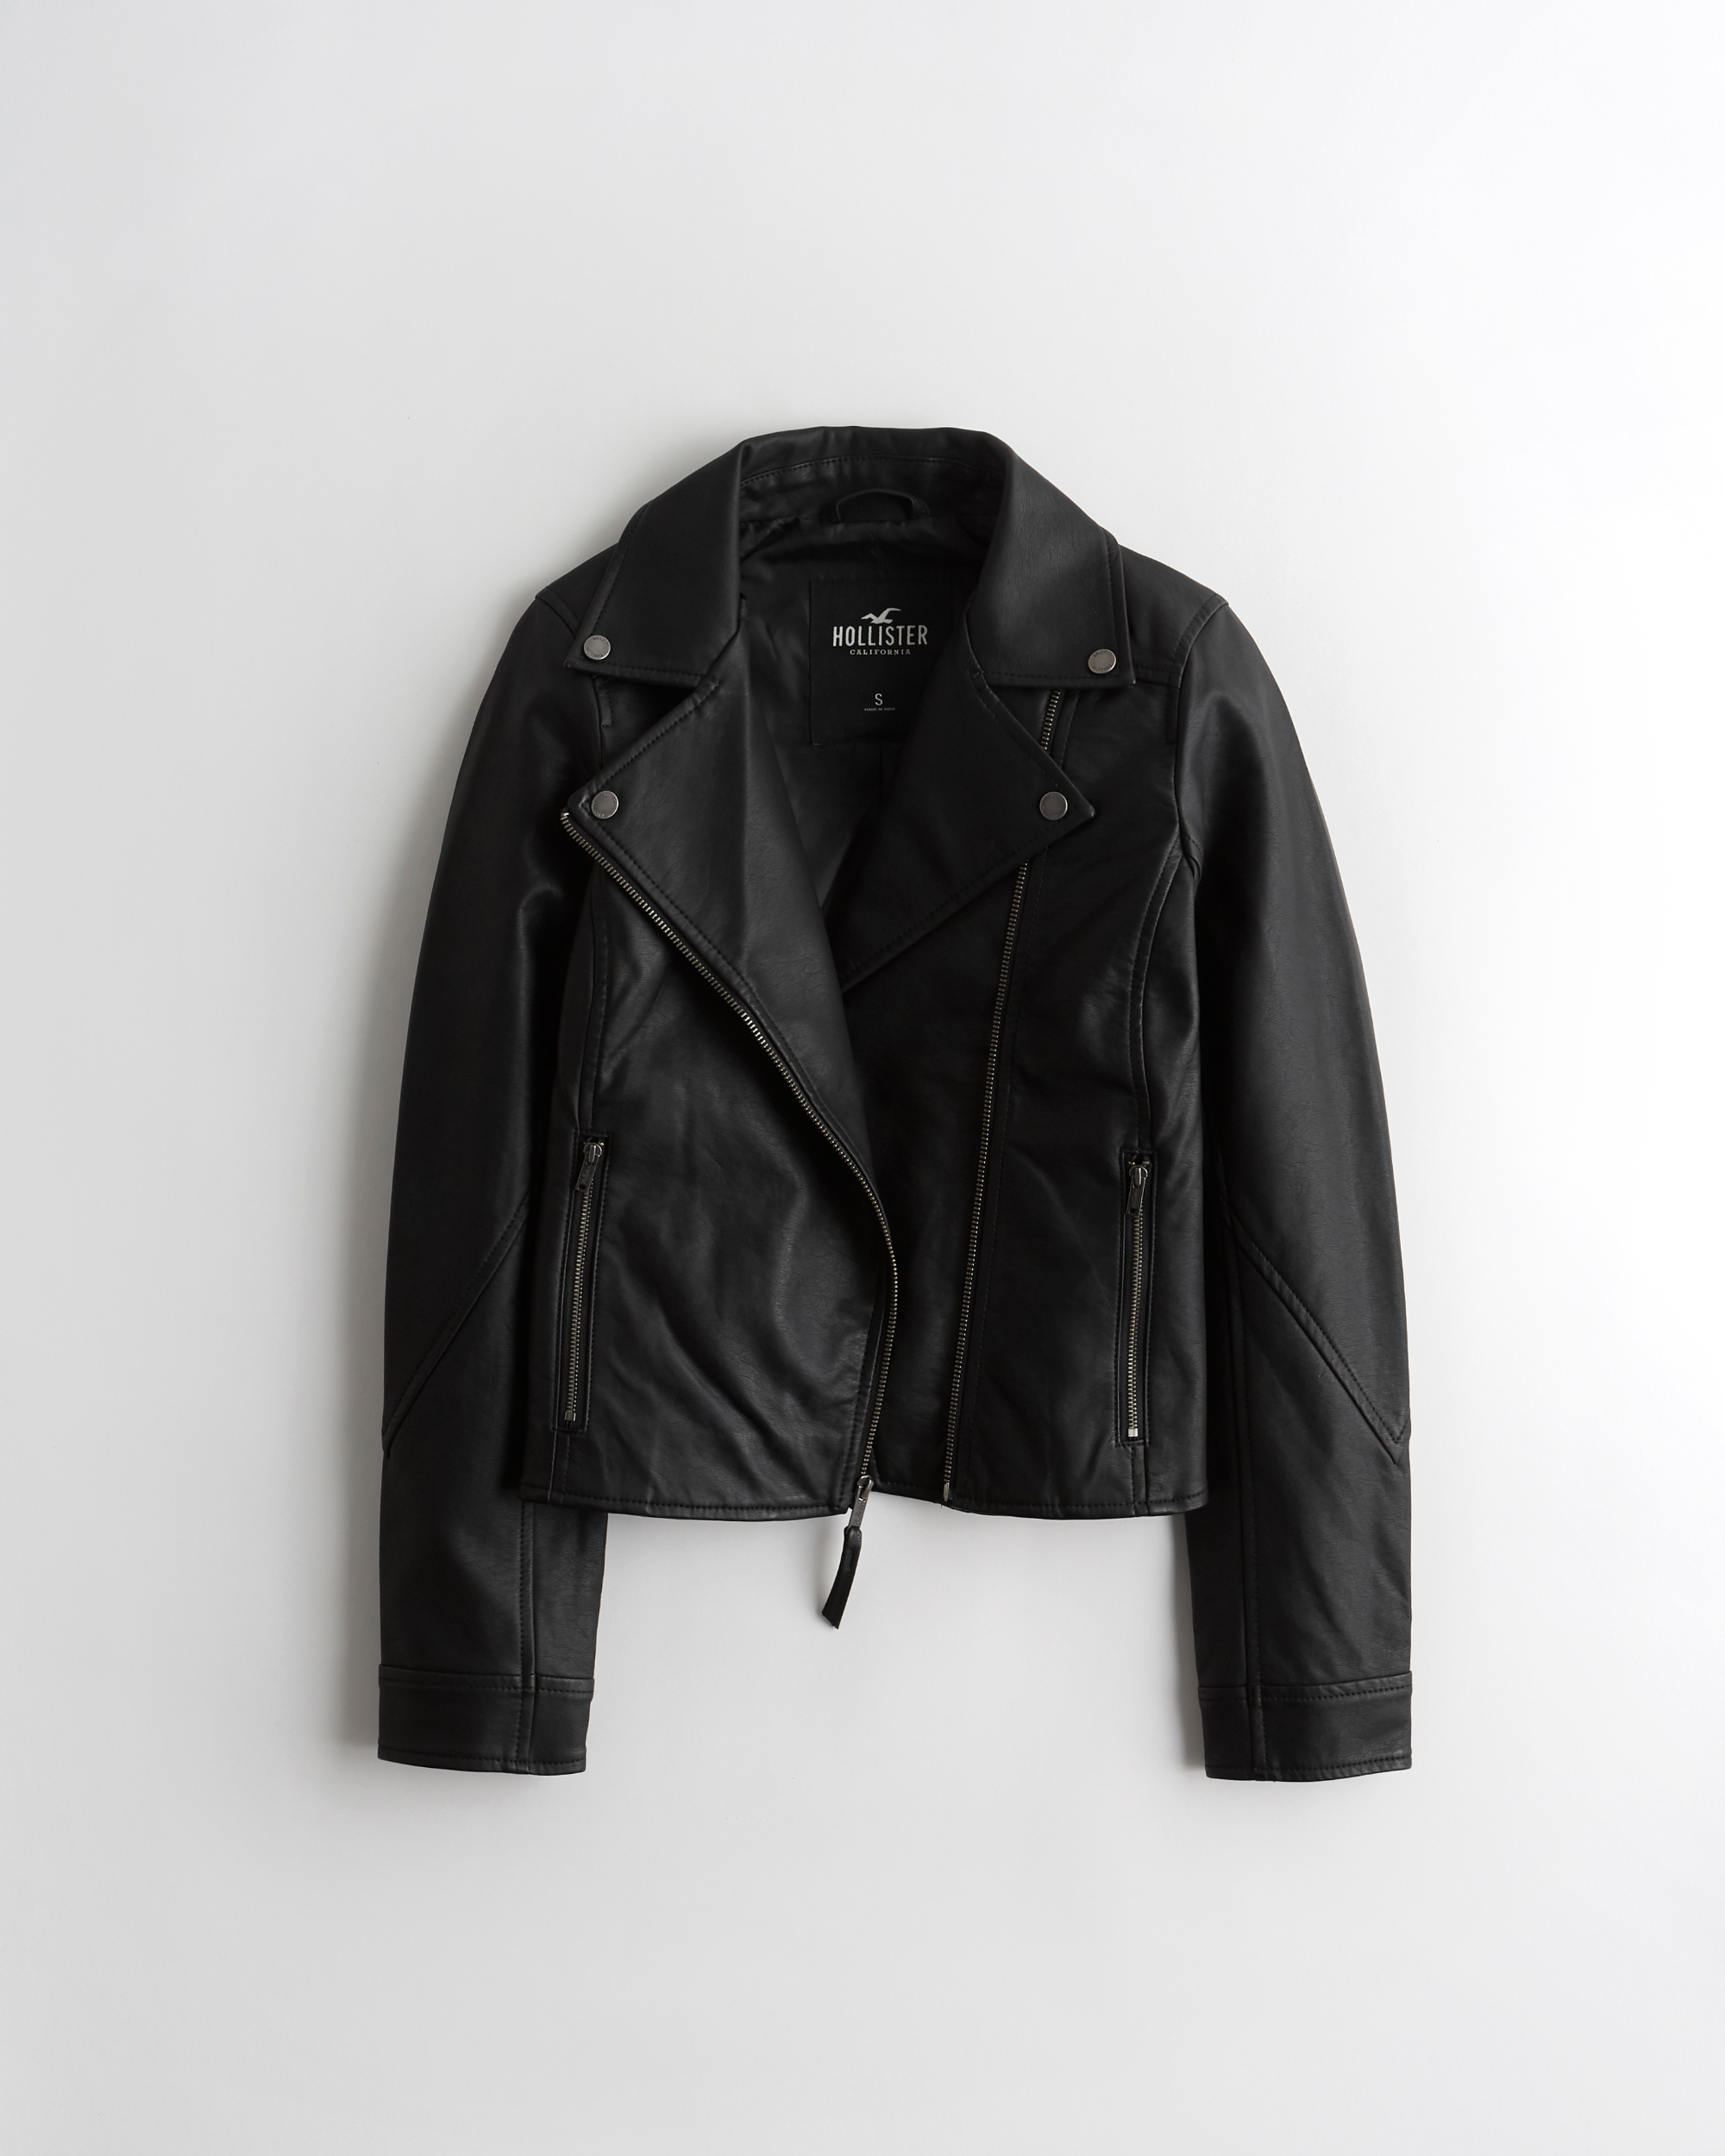 hollister mens leather jacket